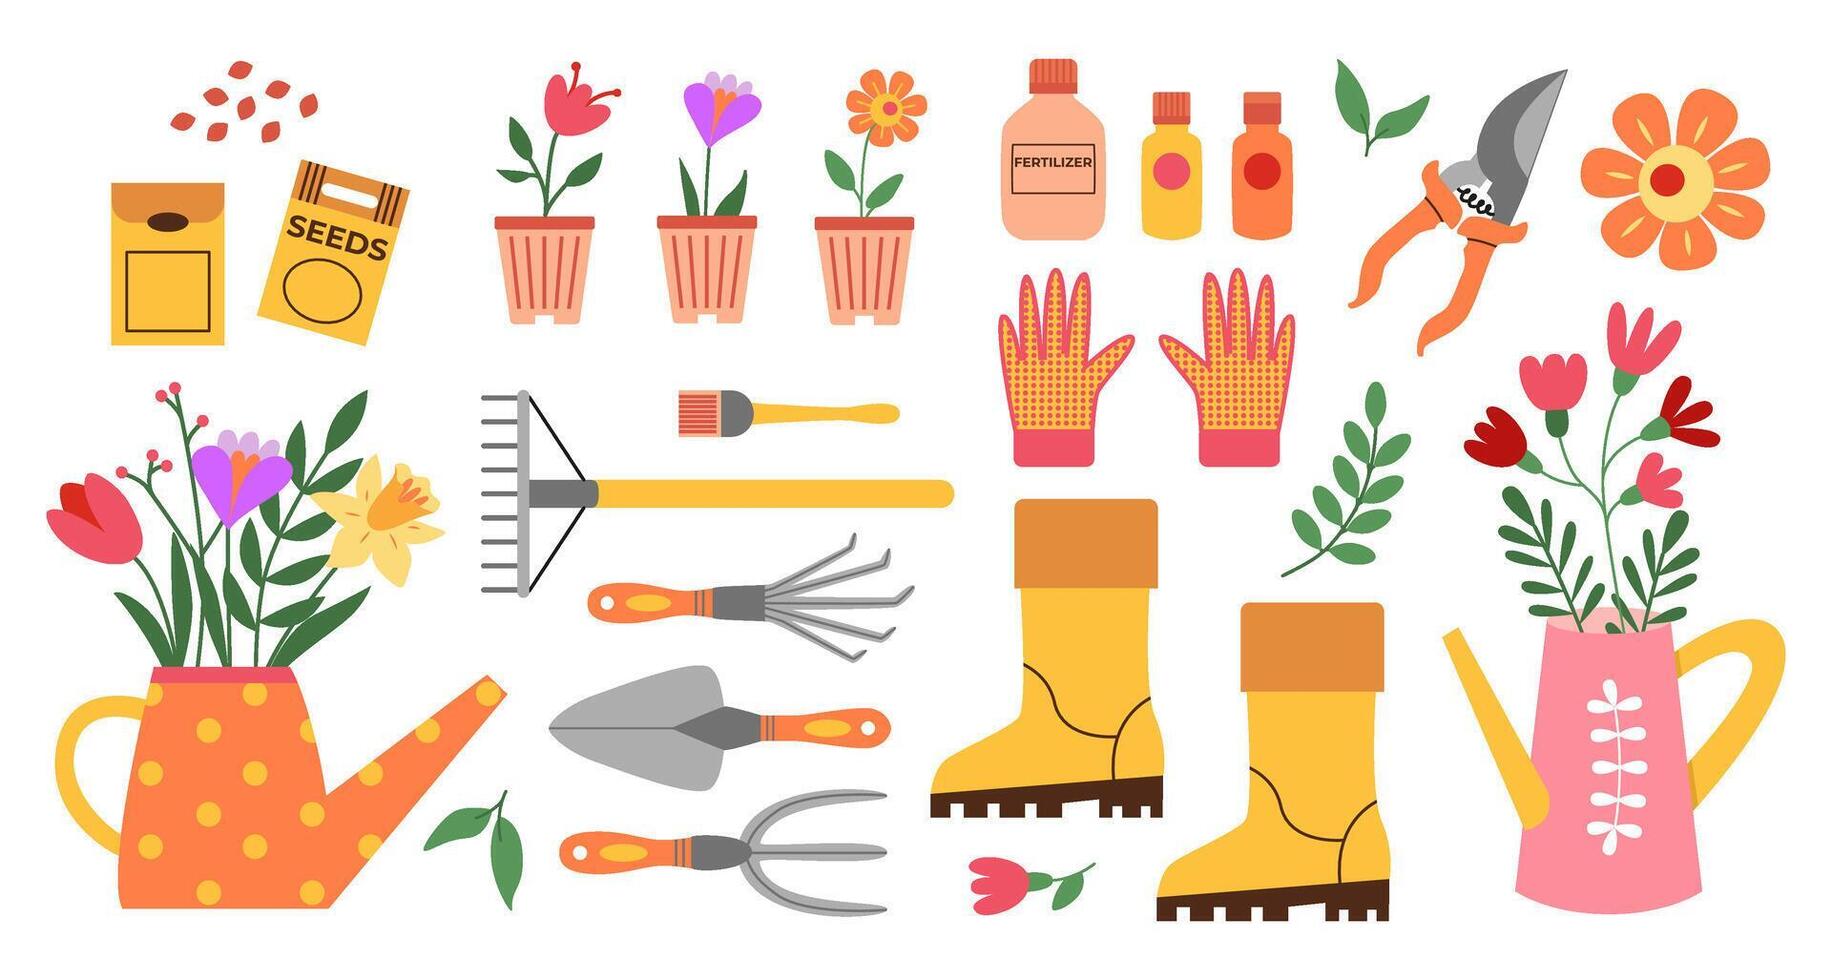 vår trädgårdsarbete och plantering. trädgård verktyg och redskap, vattning burk, frön, växter, gödselmedel, stövlar, handskar, blommor. hand ritade. vektor ritningar isolerat på vit.